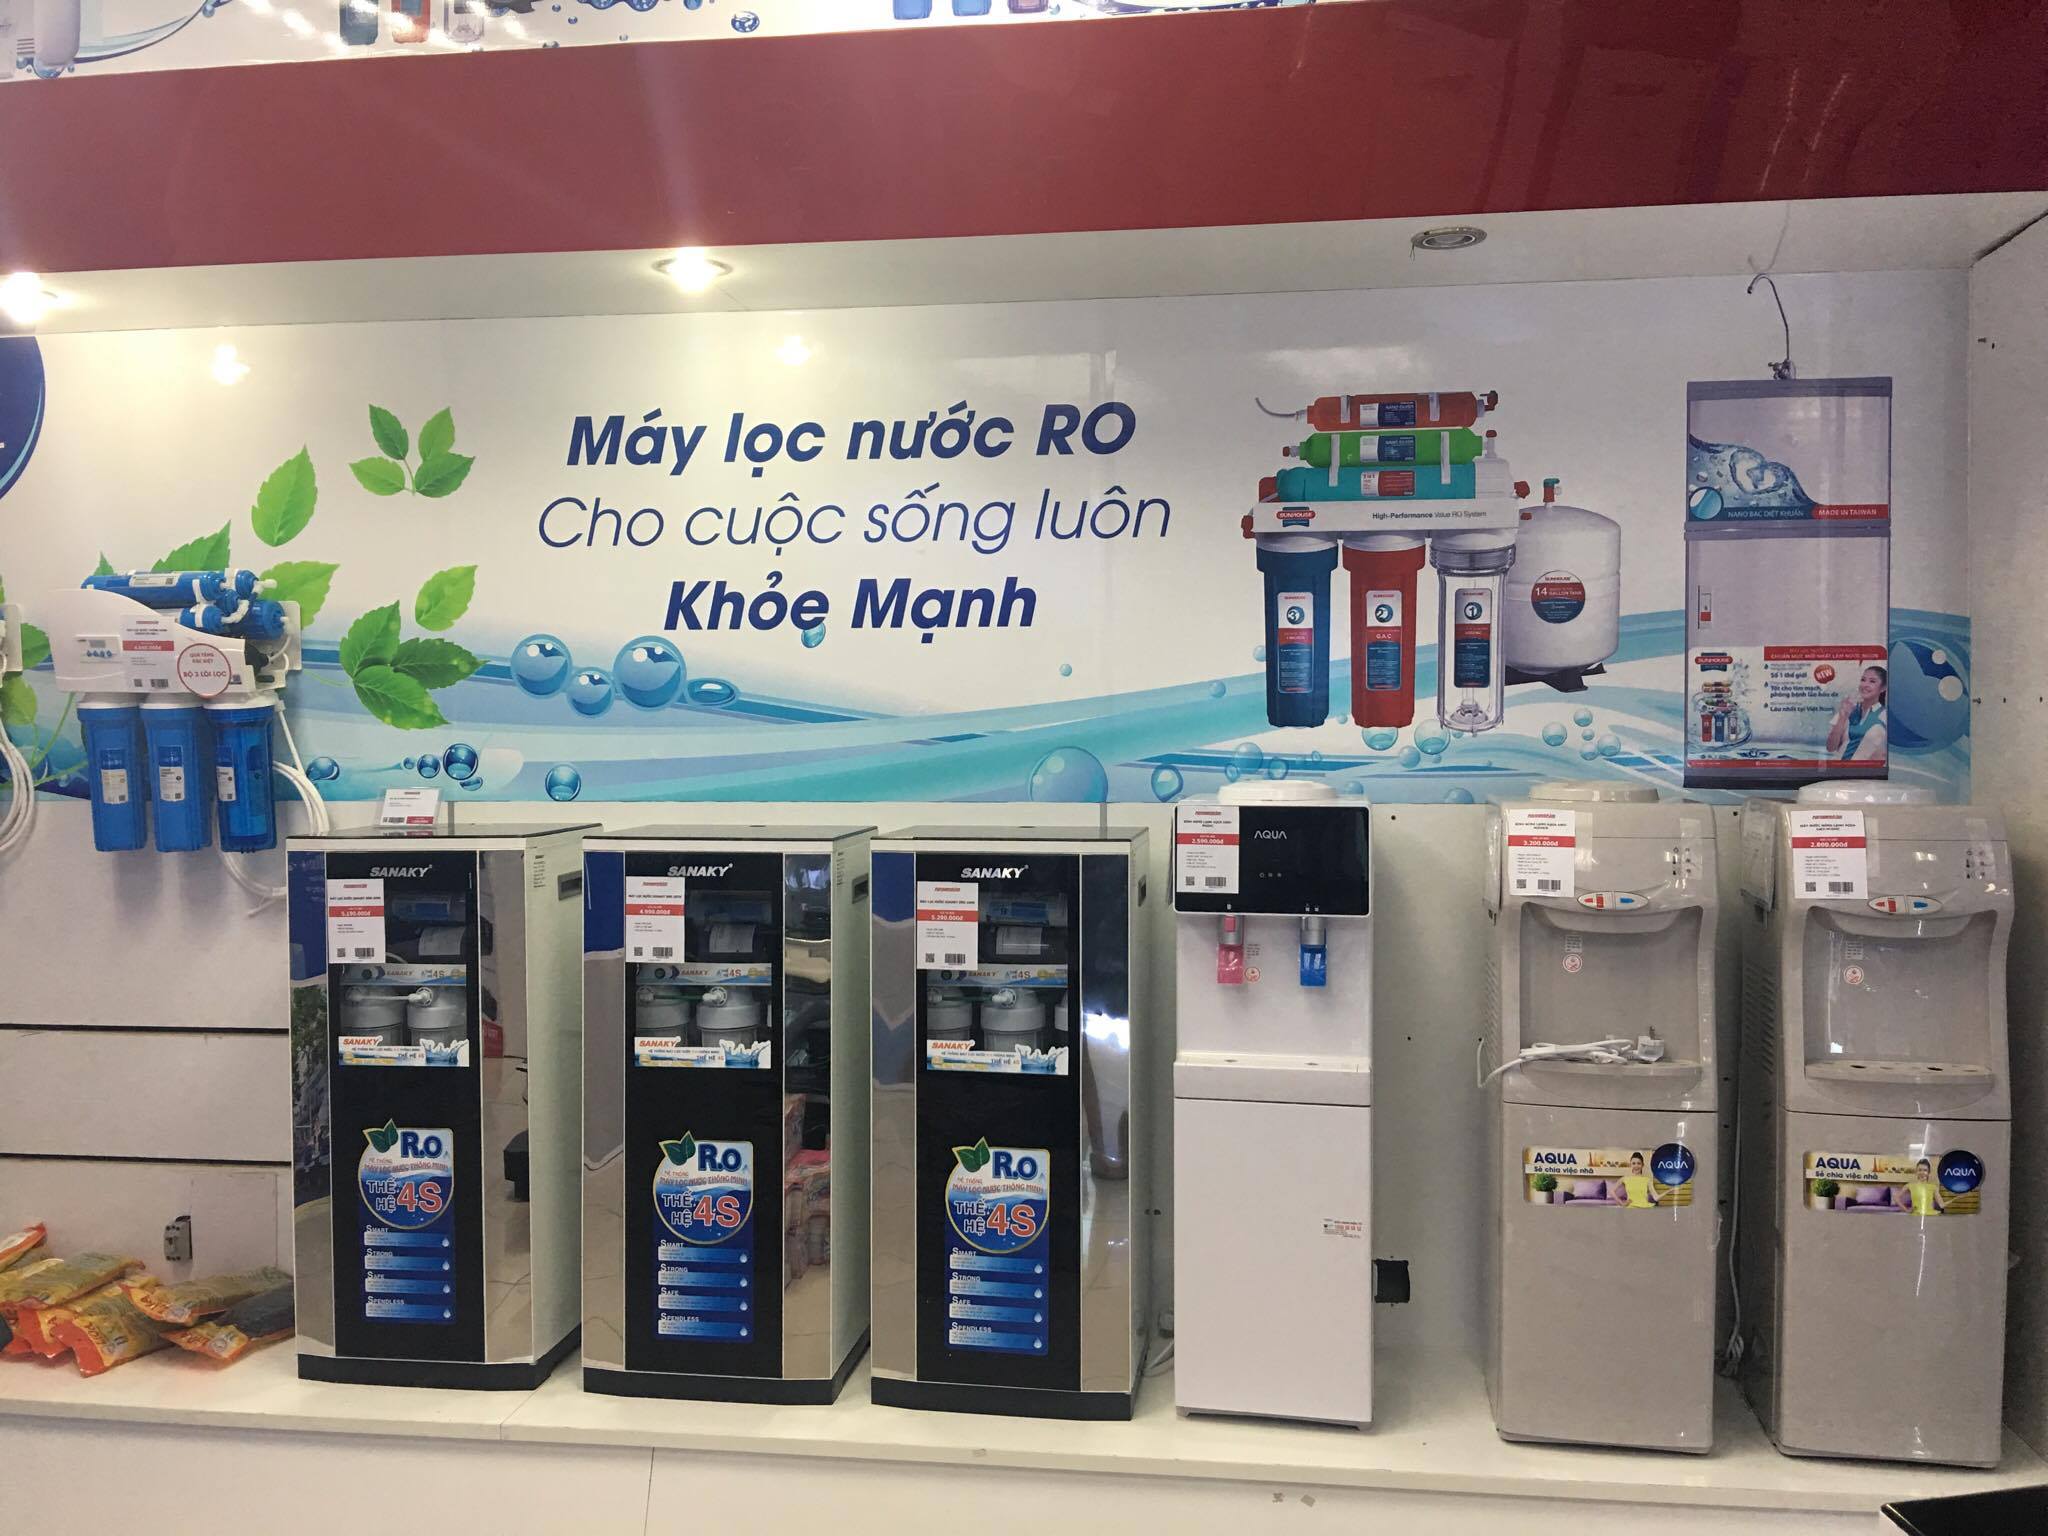  Người tiêu dùng nên thận trọng khi lựa chọn máy lọc nước RO giả.  